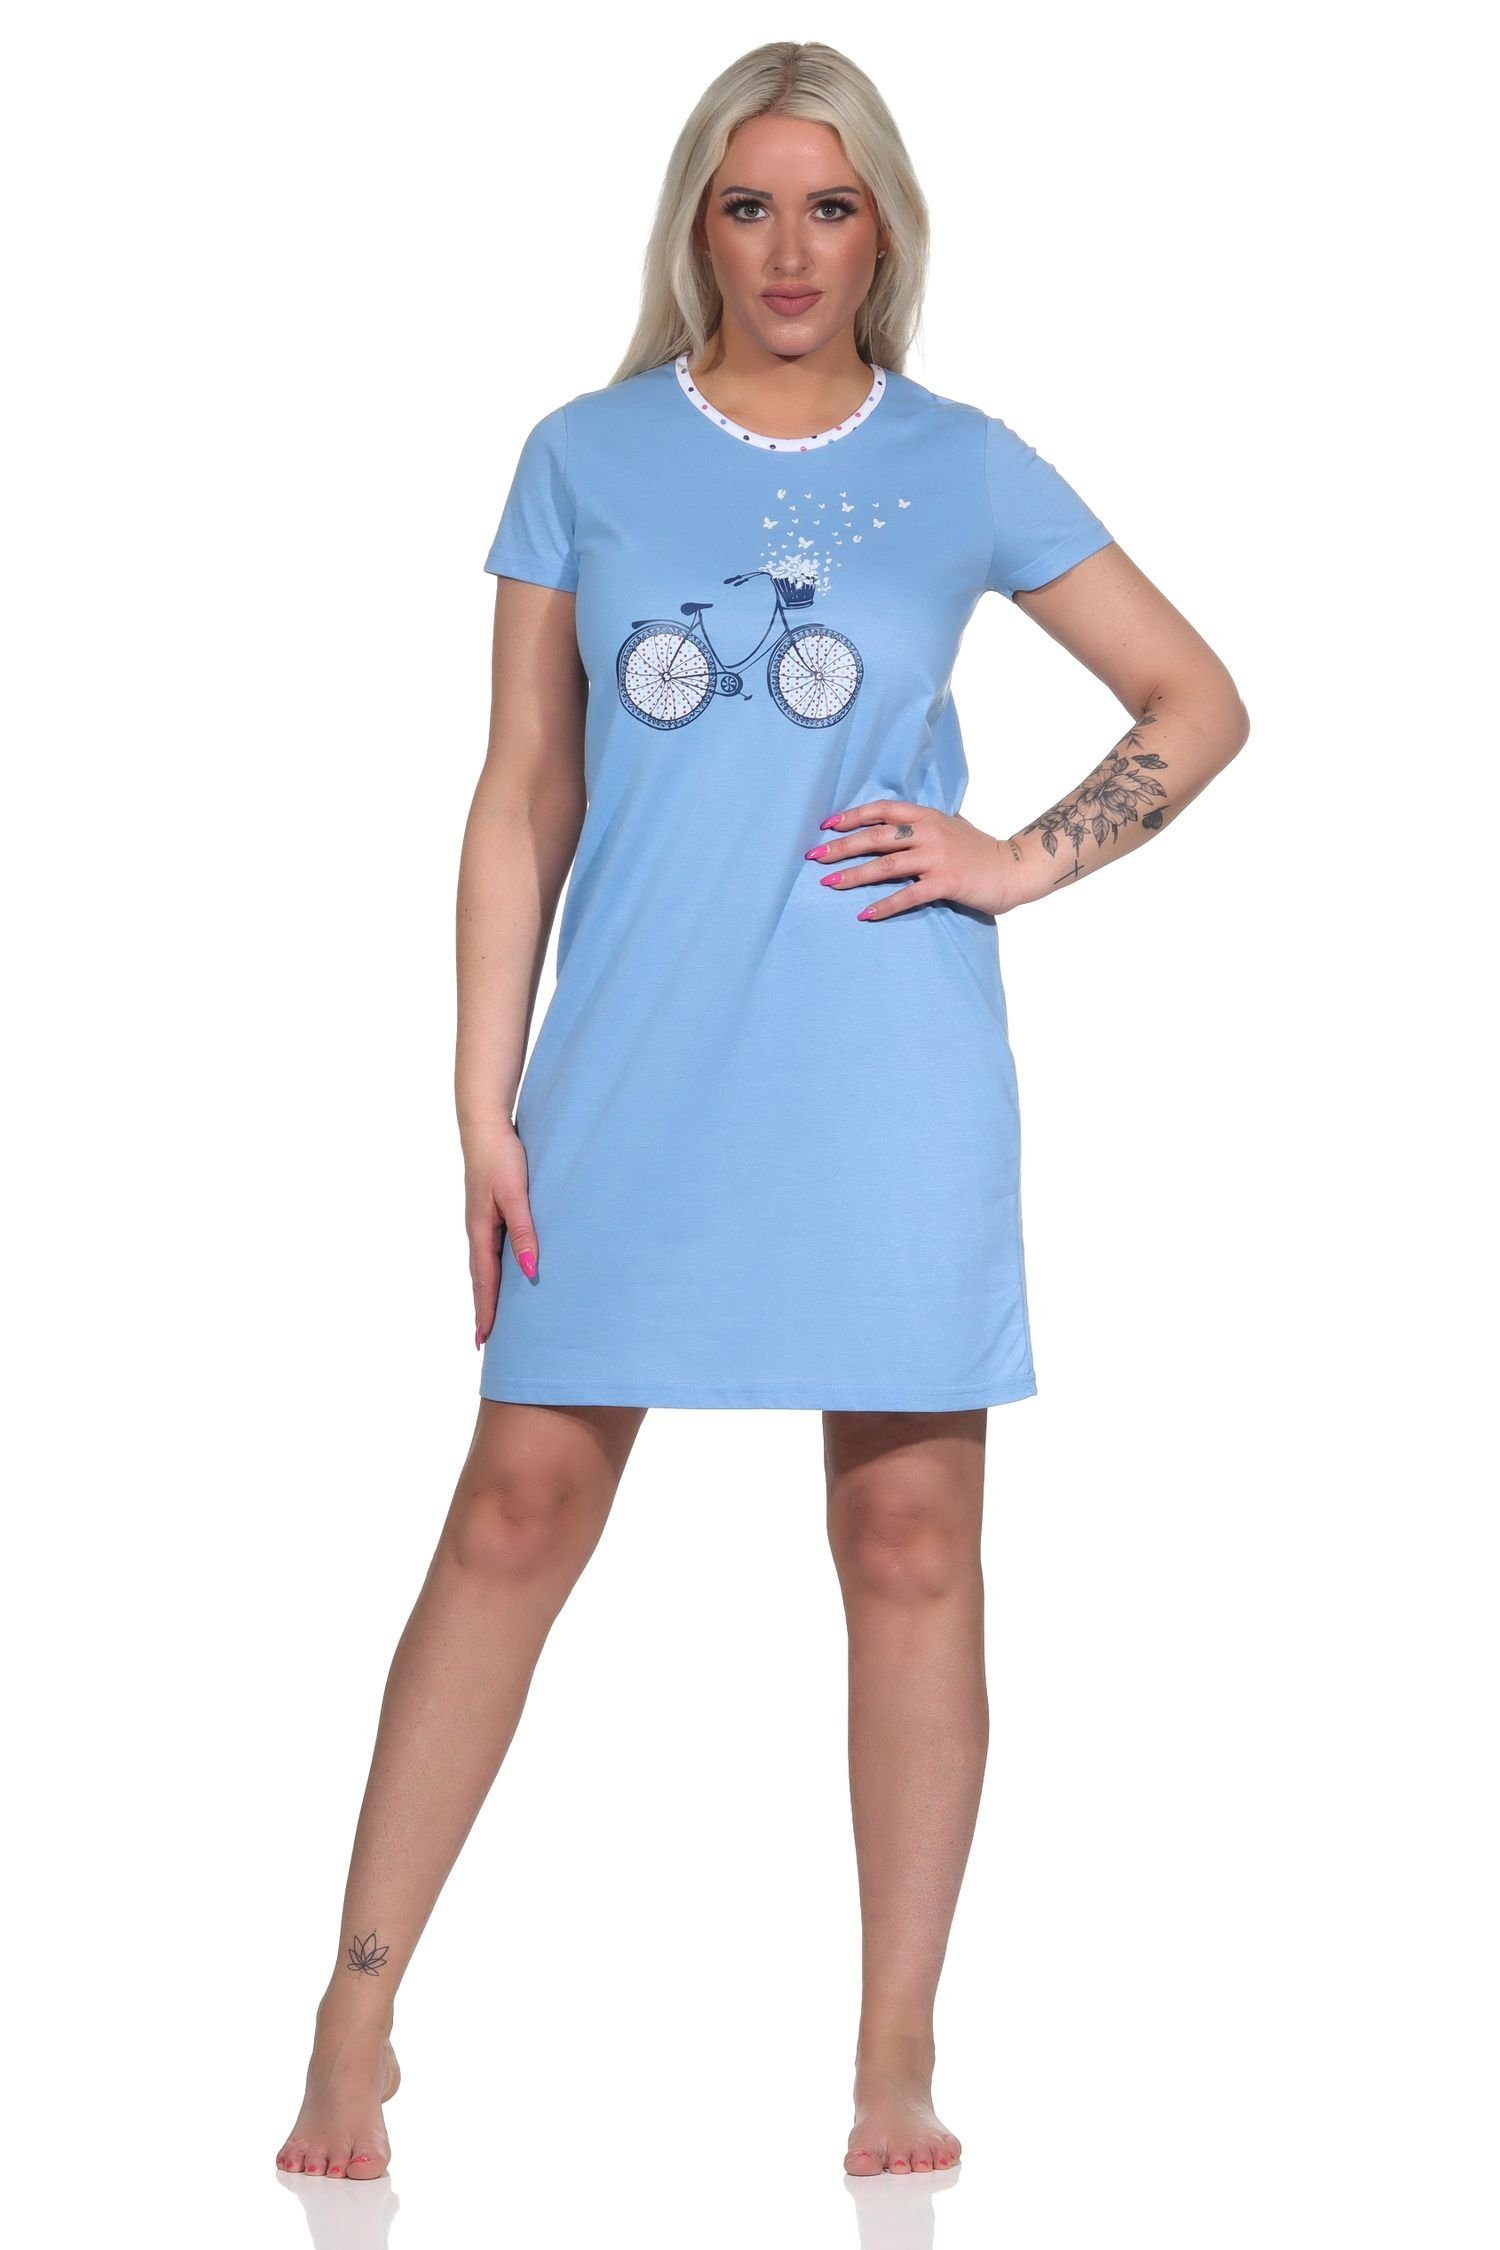 Normann Nachthemd Kurzes Damen Nachthemd Bigshirt mit Fahrrad-Motiv - 112 10 736 blau